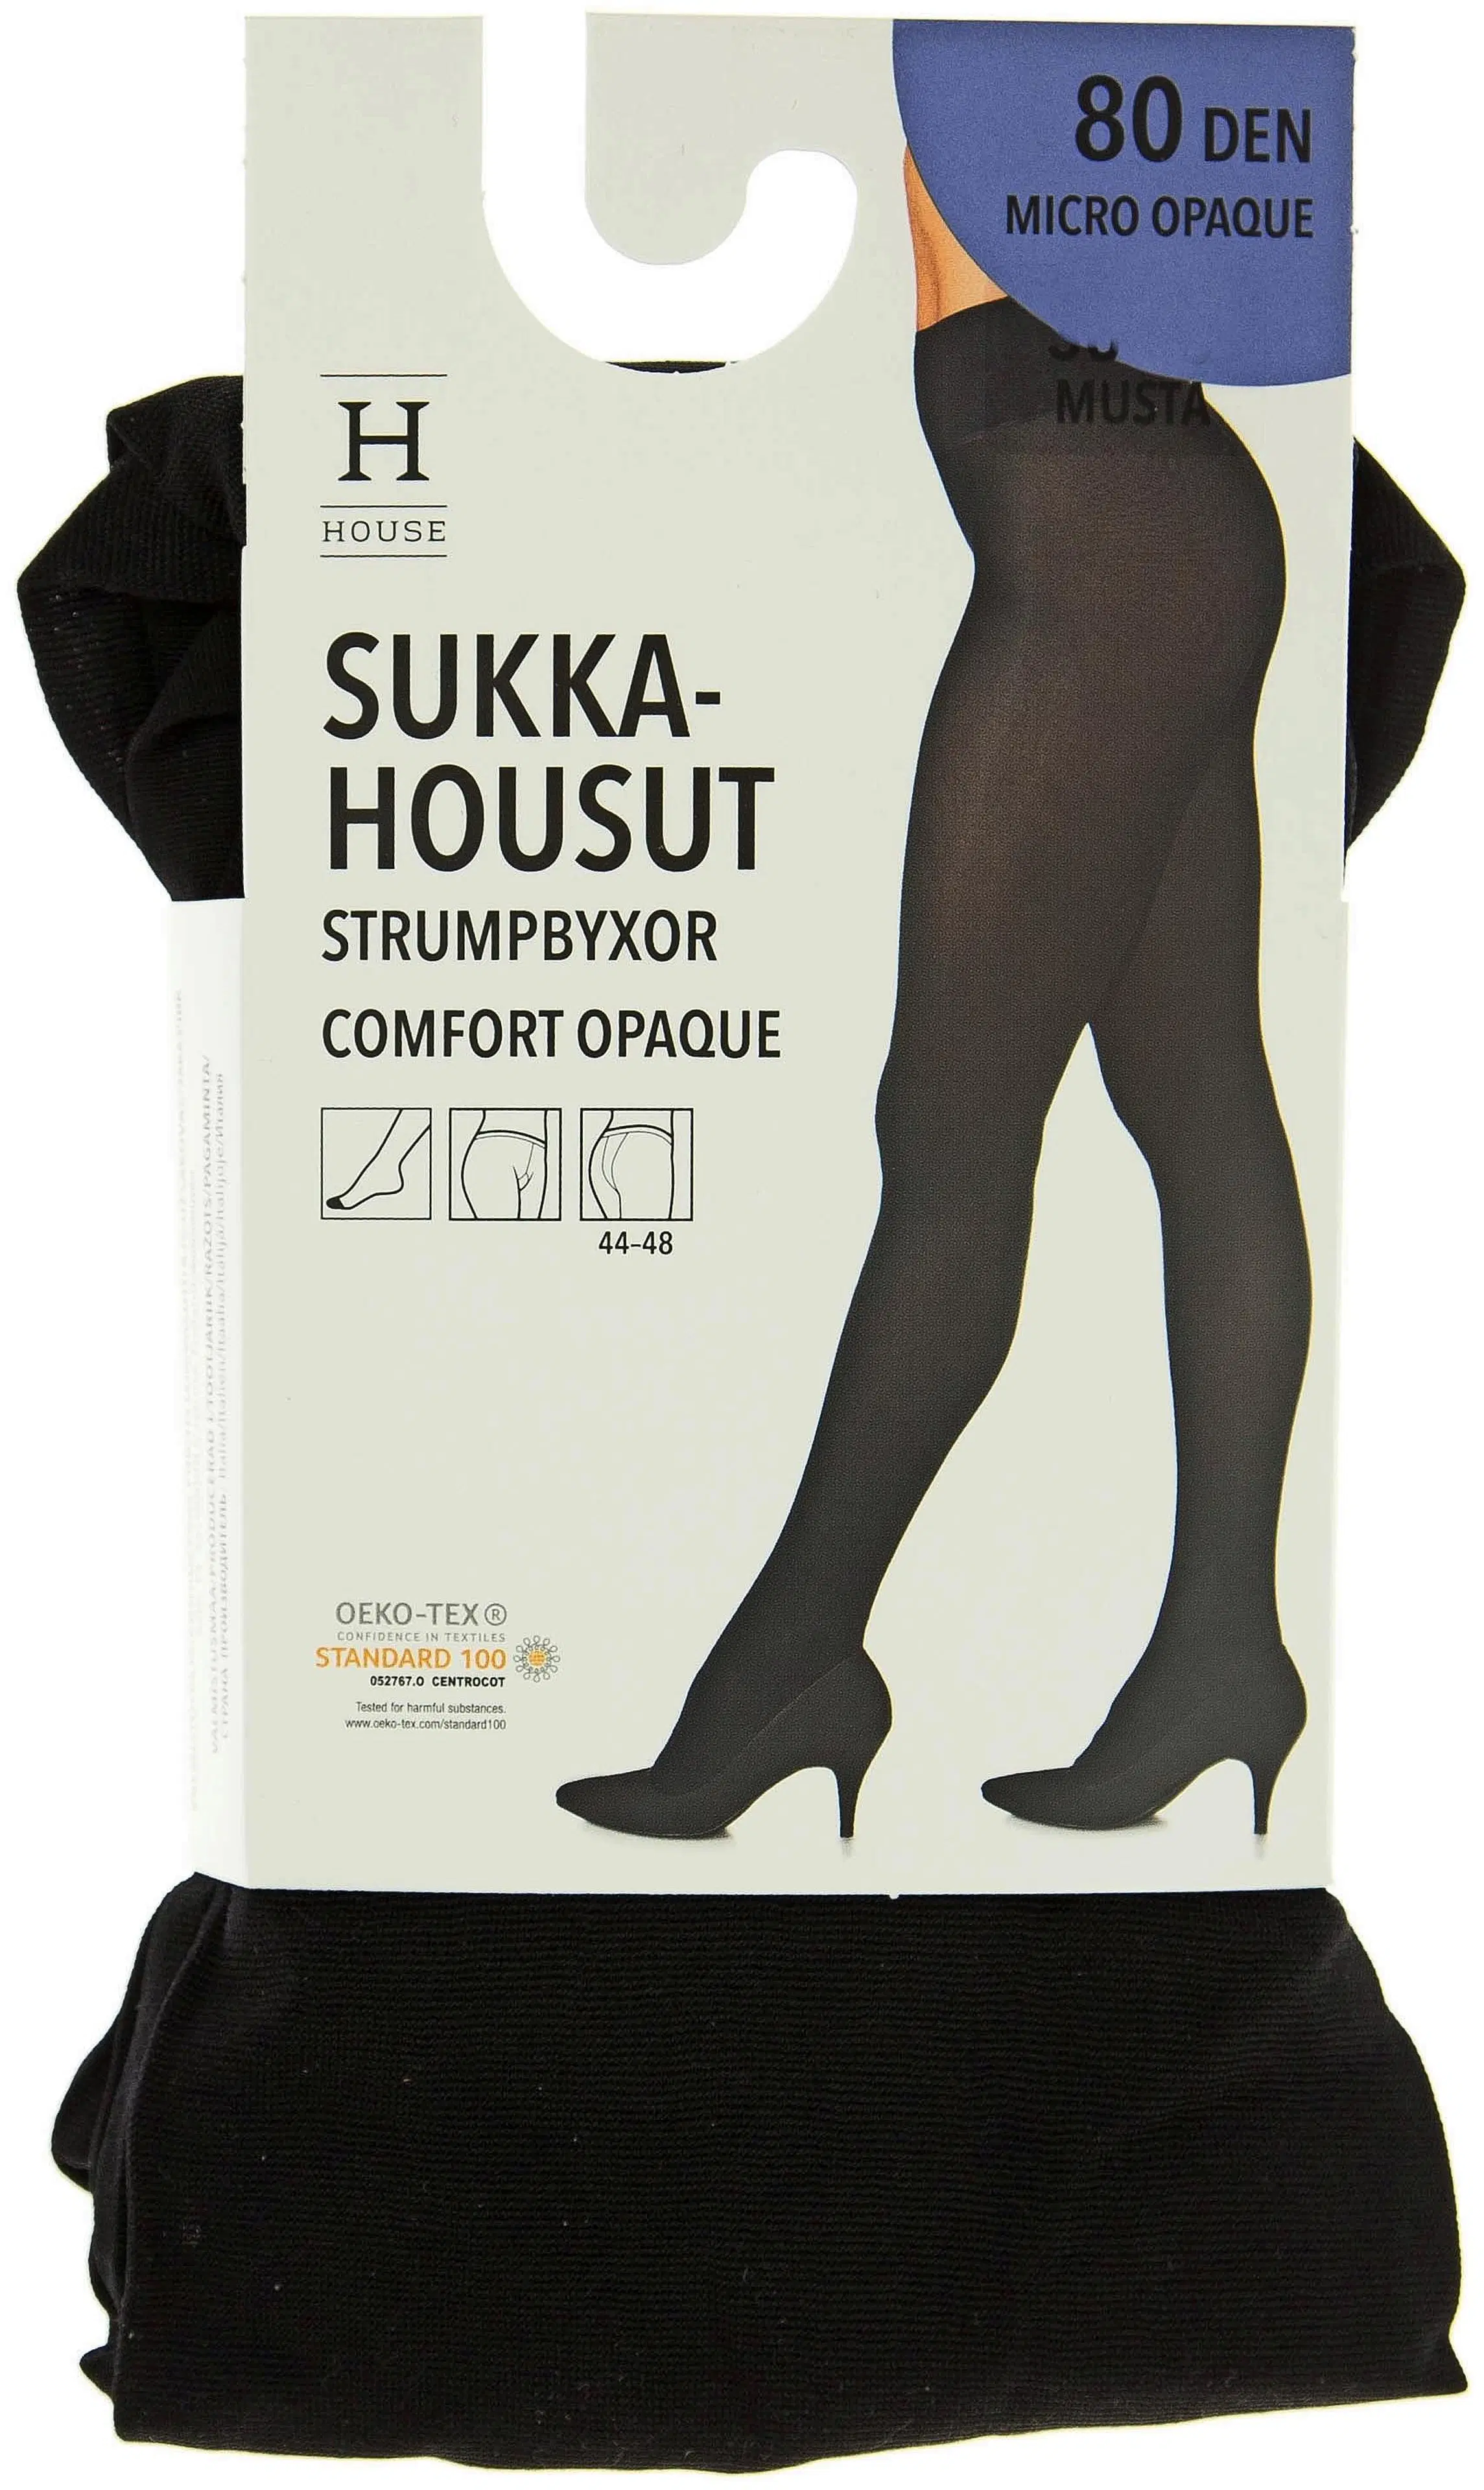 House Comfort Opaque sukkahousut 80 den